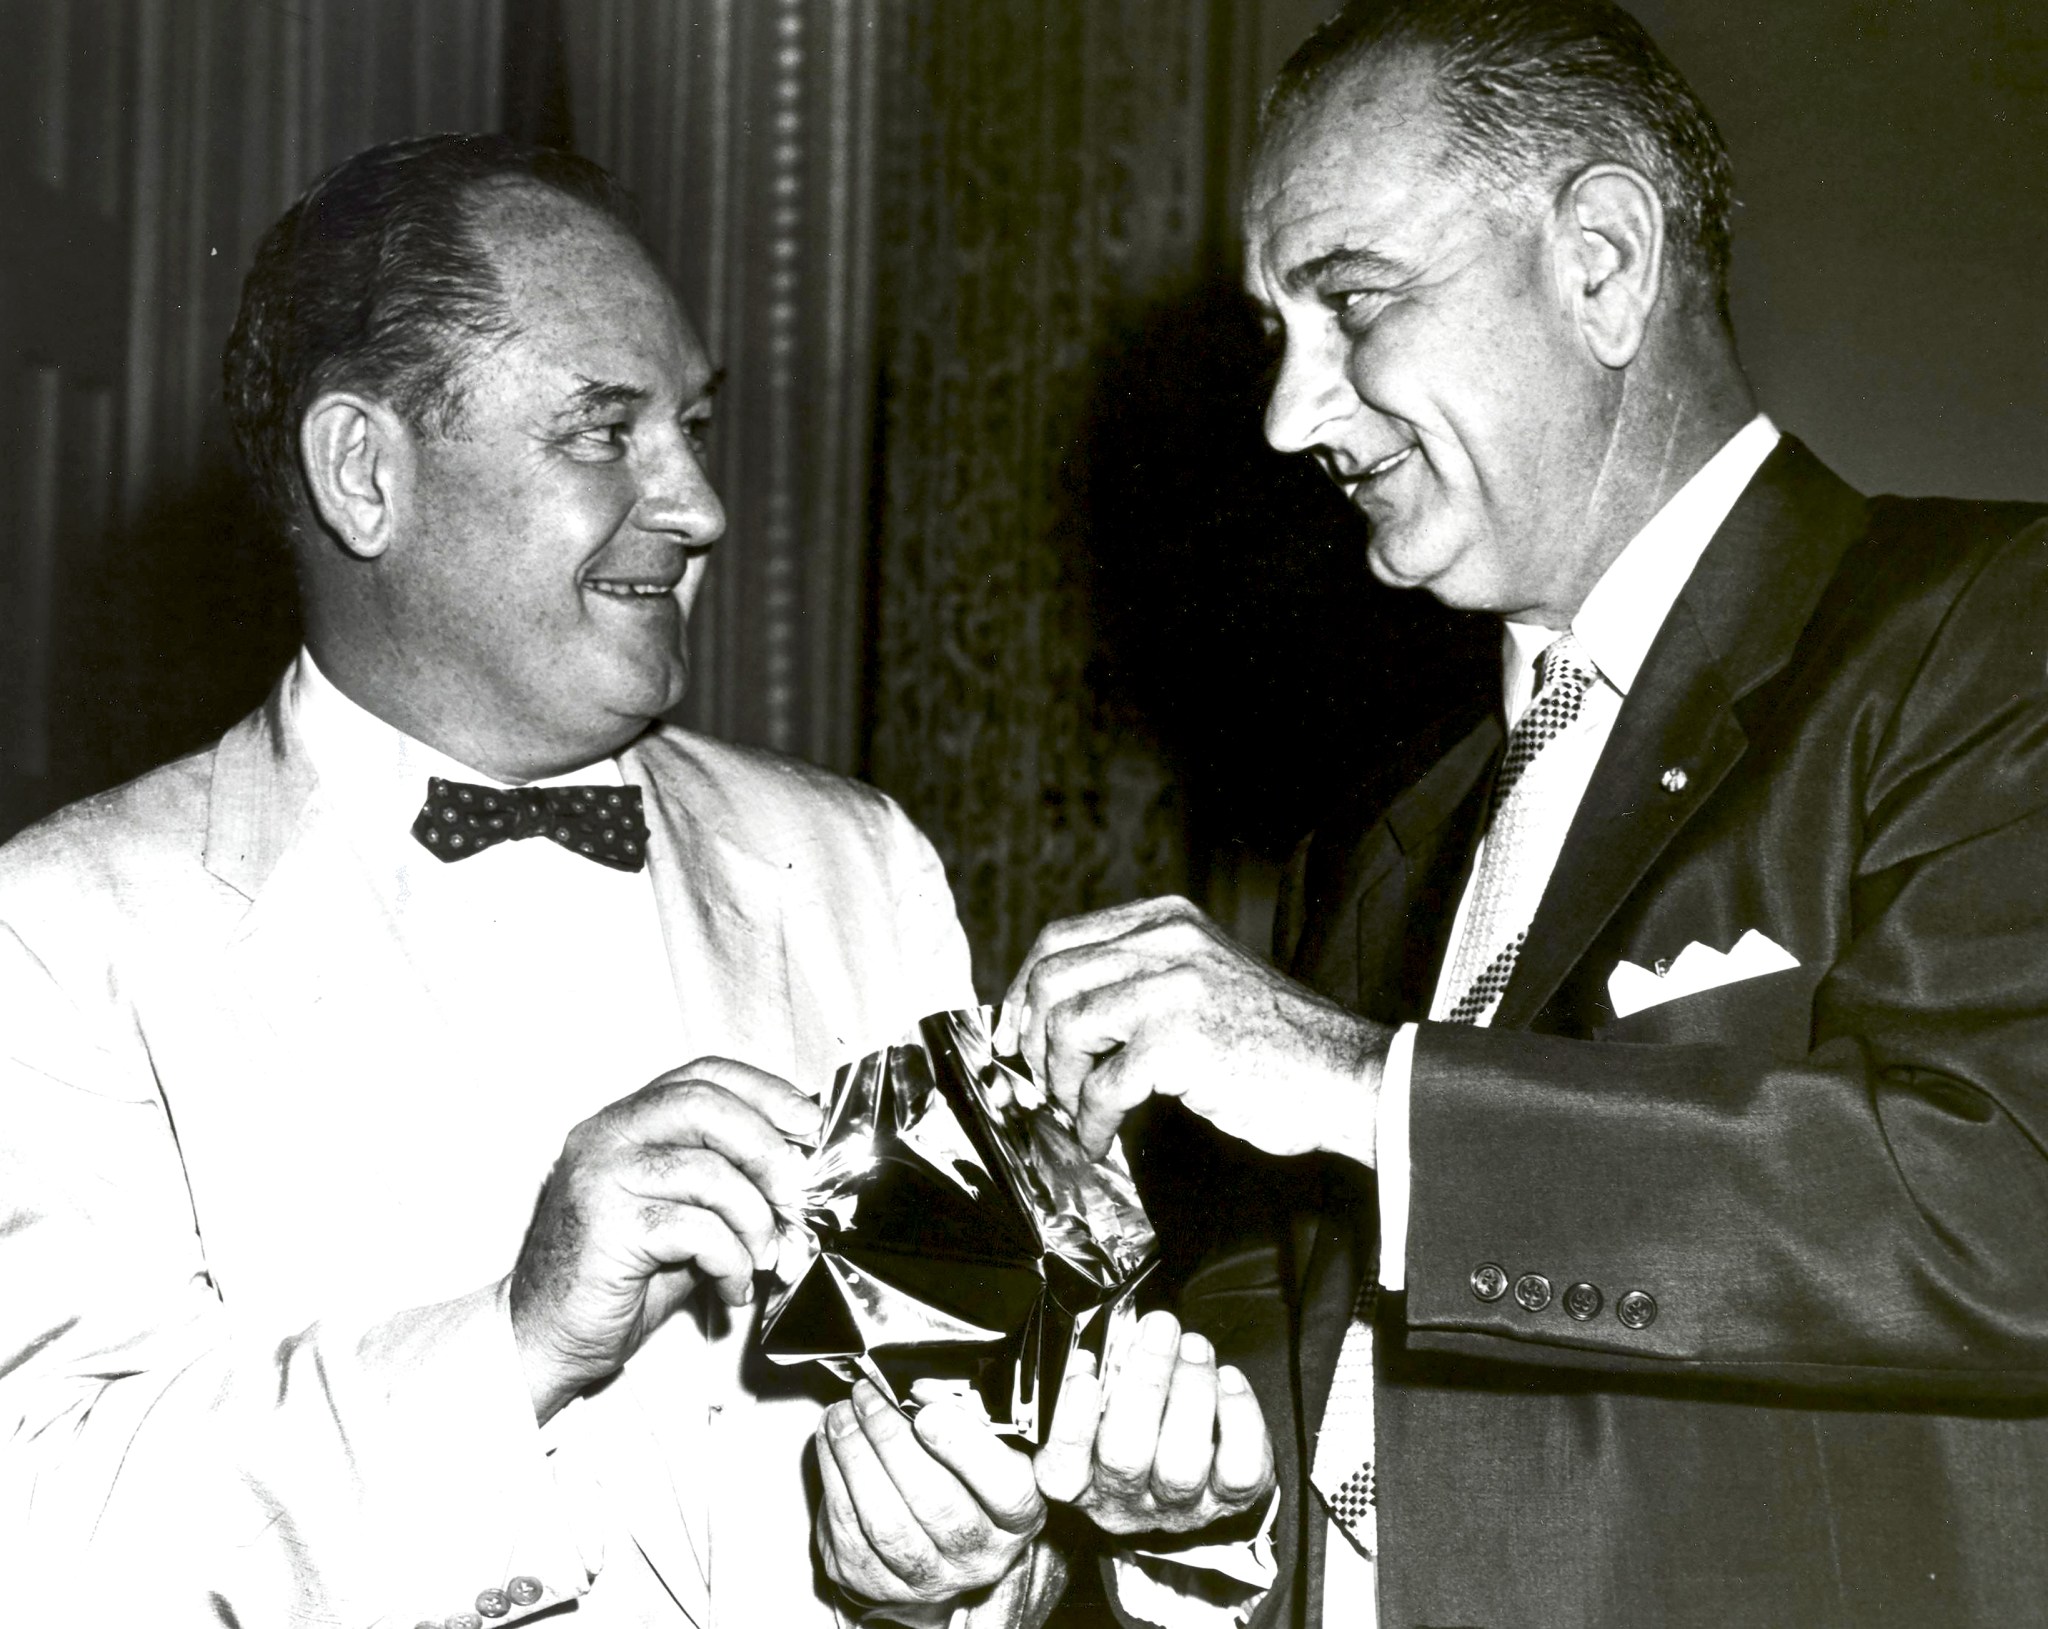 T. Keith Glennan and Lyndon B. Johnson